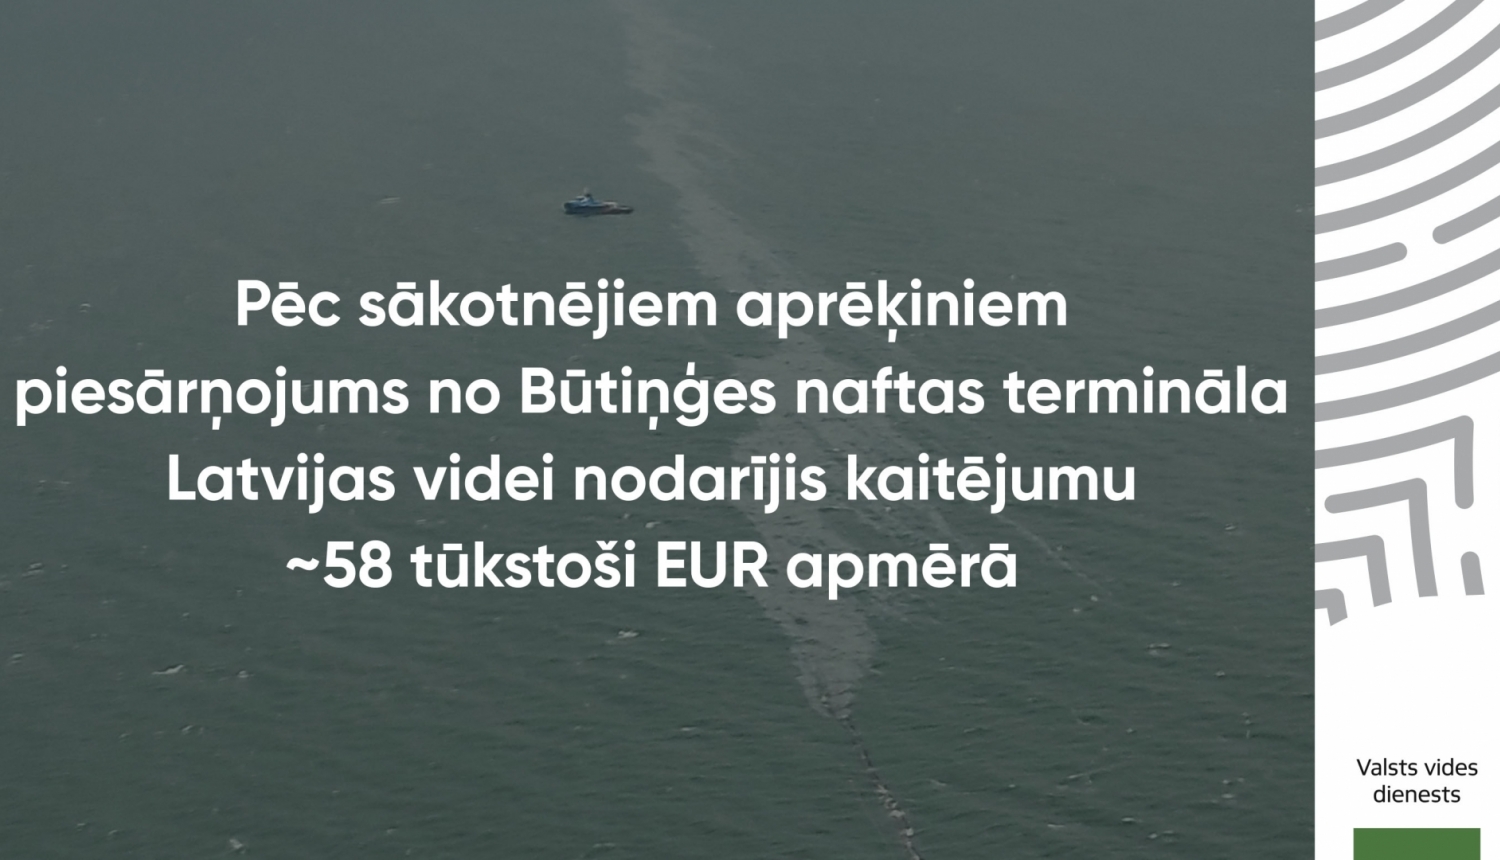 Foto Būtiņģes naftas termināla piesārņojums Baltijas jūrā 28.12.2020. ar tekstu